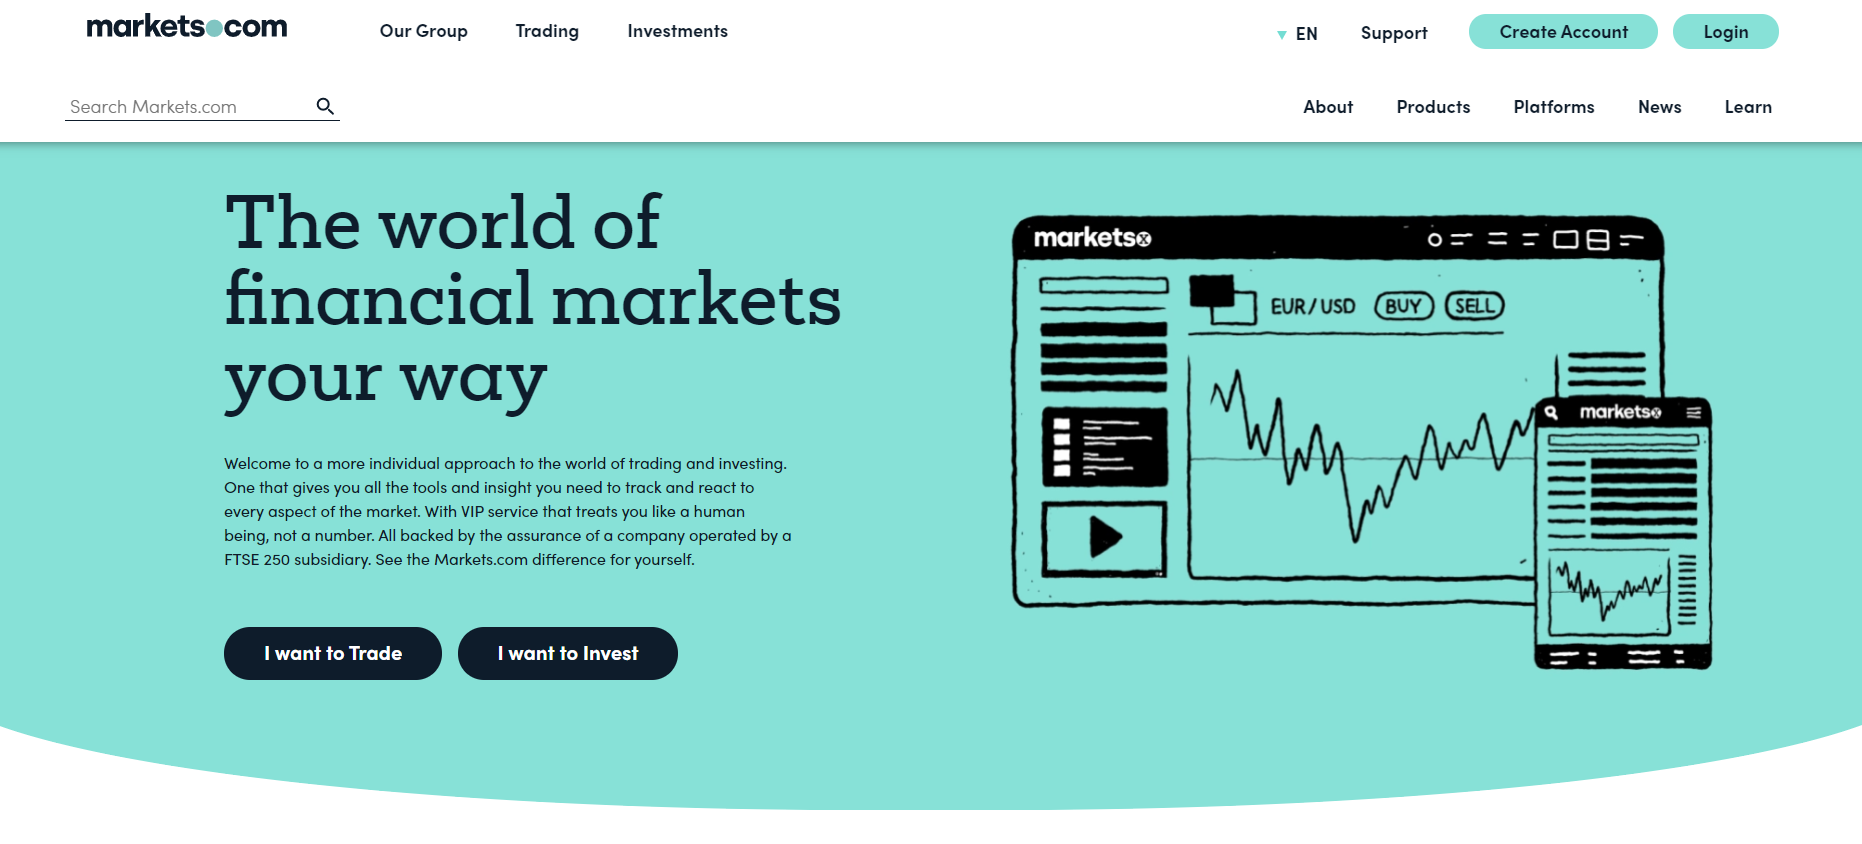 The official website of Markets.com